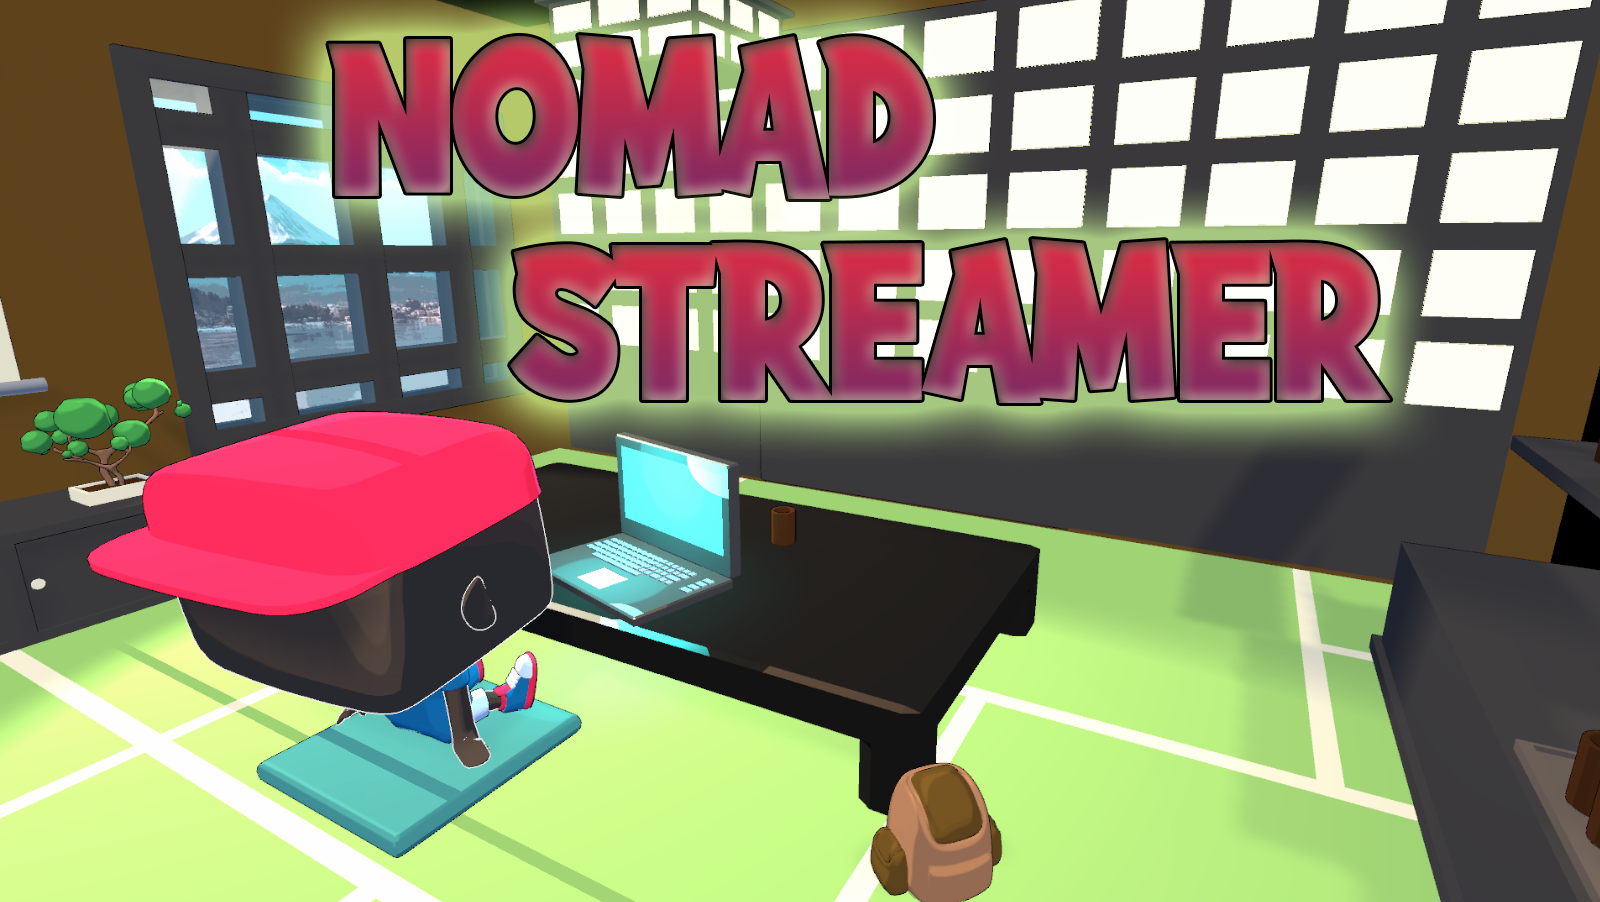 Nomad Streamer